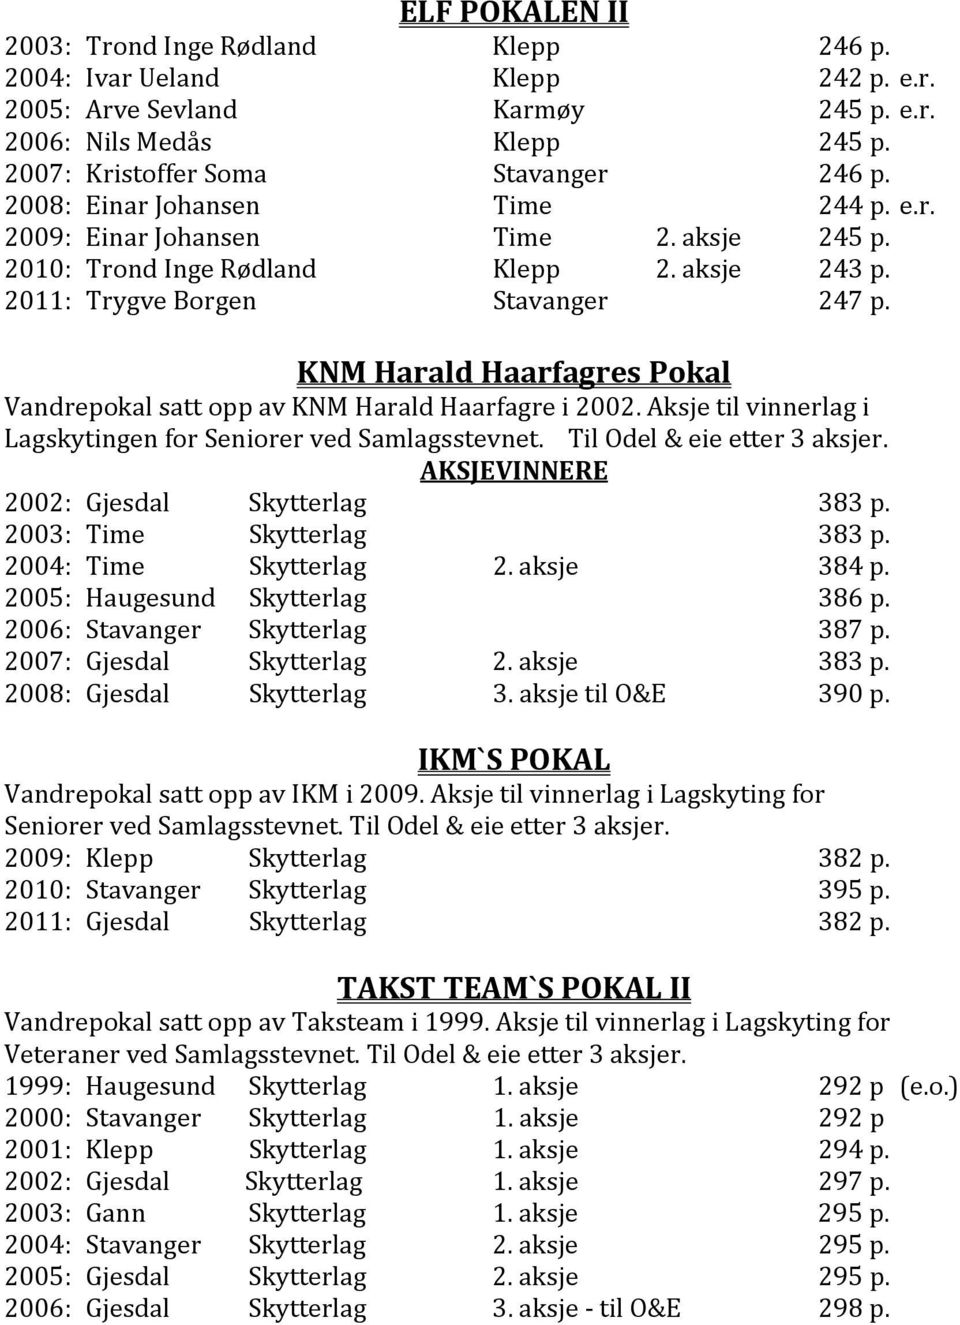 KNM Harald Haarfagres Pokal Vandrepokal satt opp av KNM Harald Haarfagre i 2002. Aksje til vinnerlag i Lagskytingen for Seniorer ved Samlagsstevnet. Til Odel & eie etter 3 aksjer.